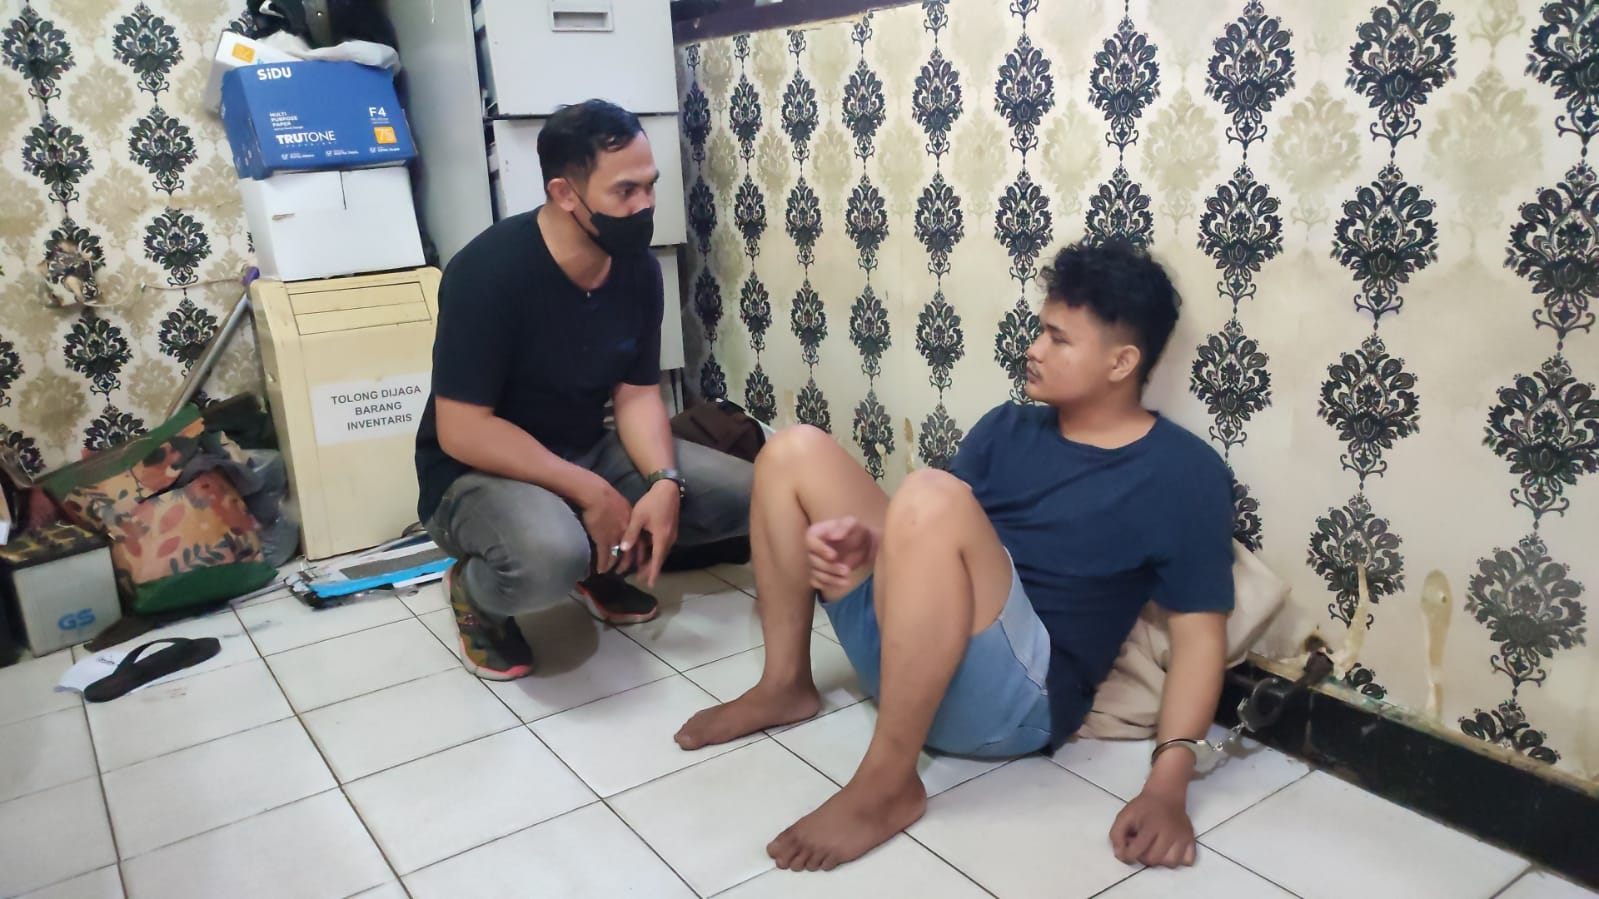 Pengakuan Pelaku Tawuran Antar Kelompok Pemuda di Palembang, Sempat Saling Tantang di Media Sosial Instagram 